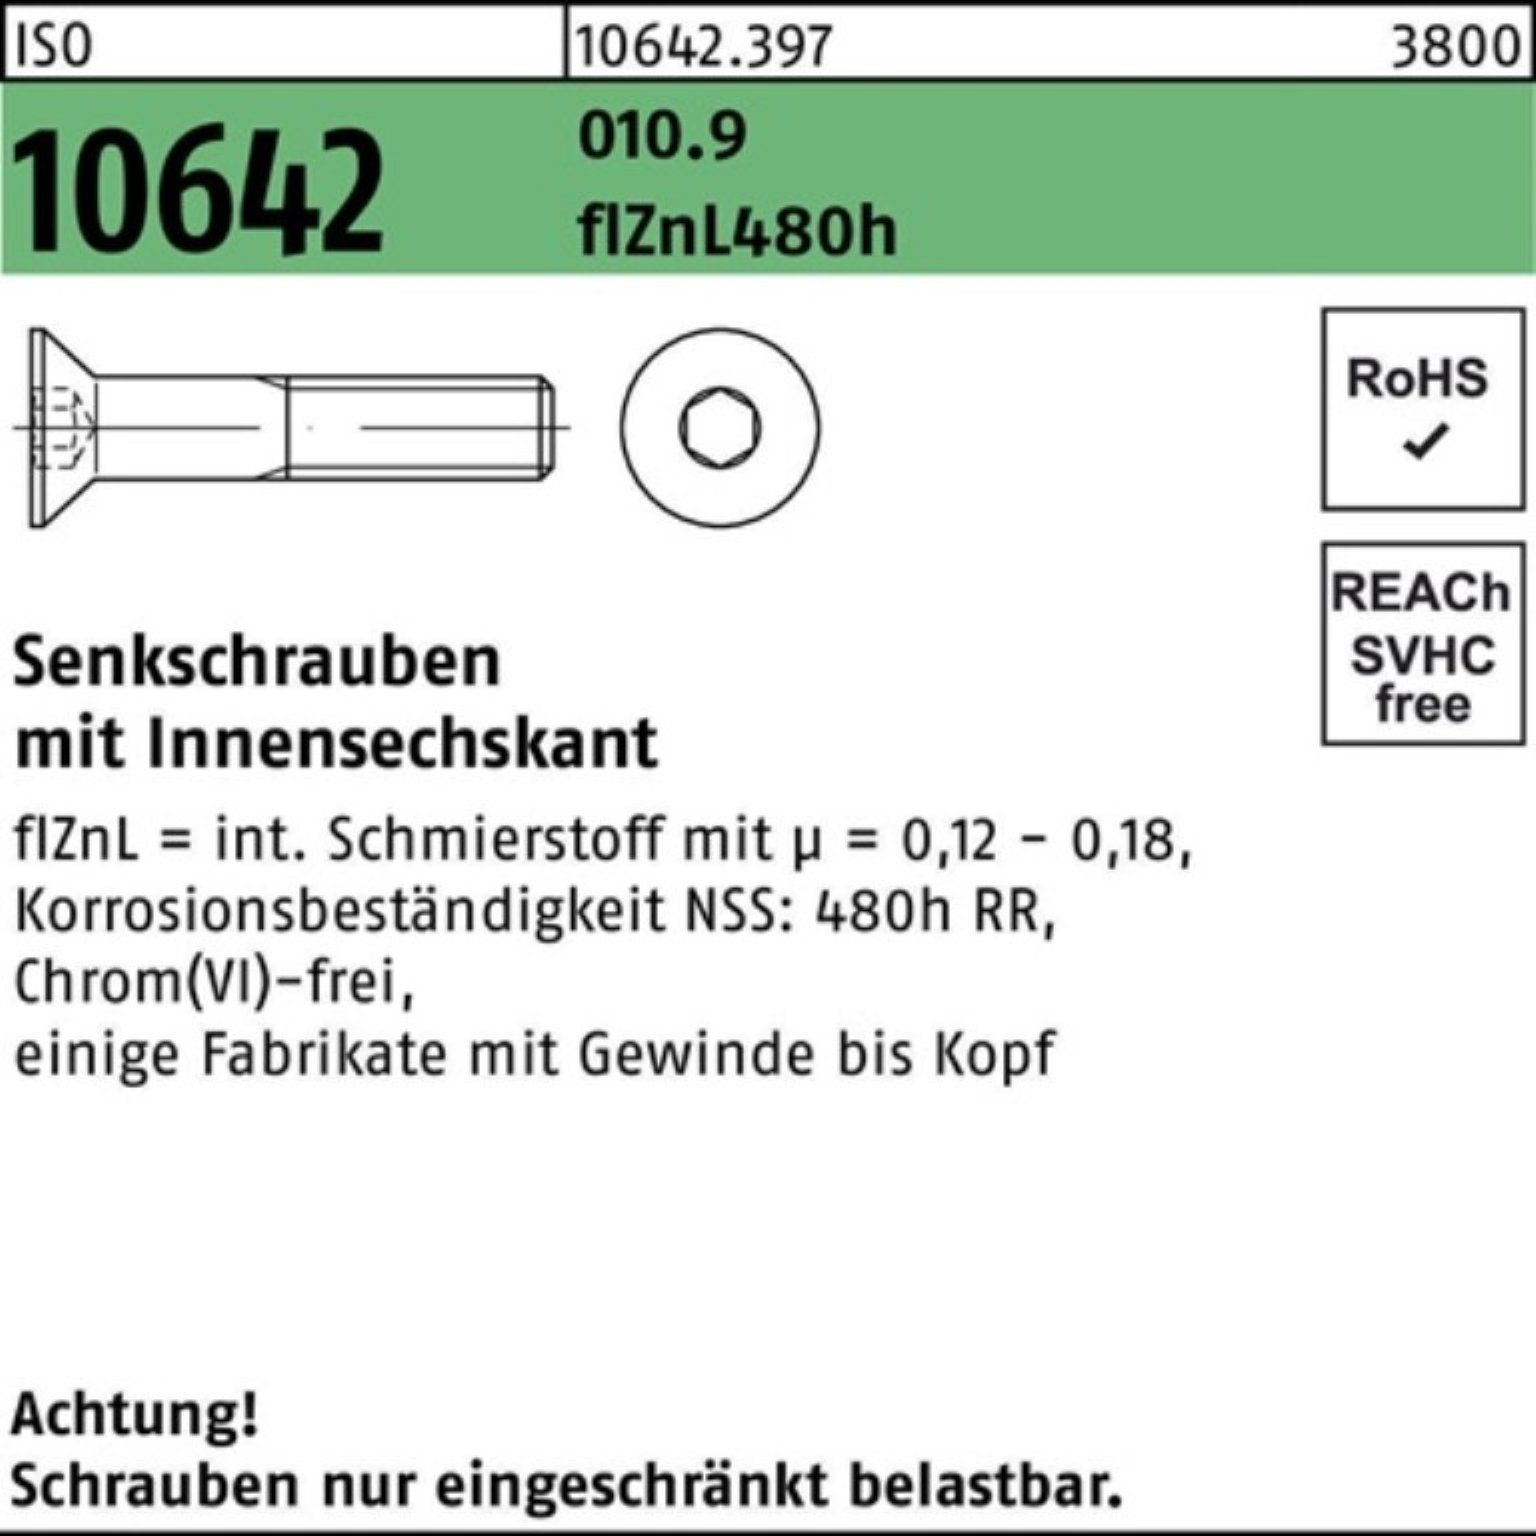 flZnL Senkschraube 10642 M10x20 Senkschraube 010.9 ISO 200er zi Reyher Innen-6kt Pack 480h